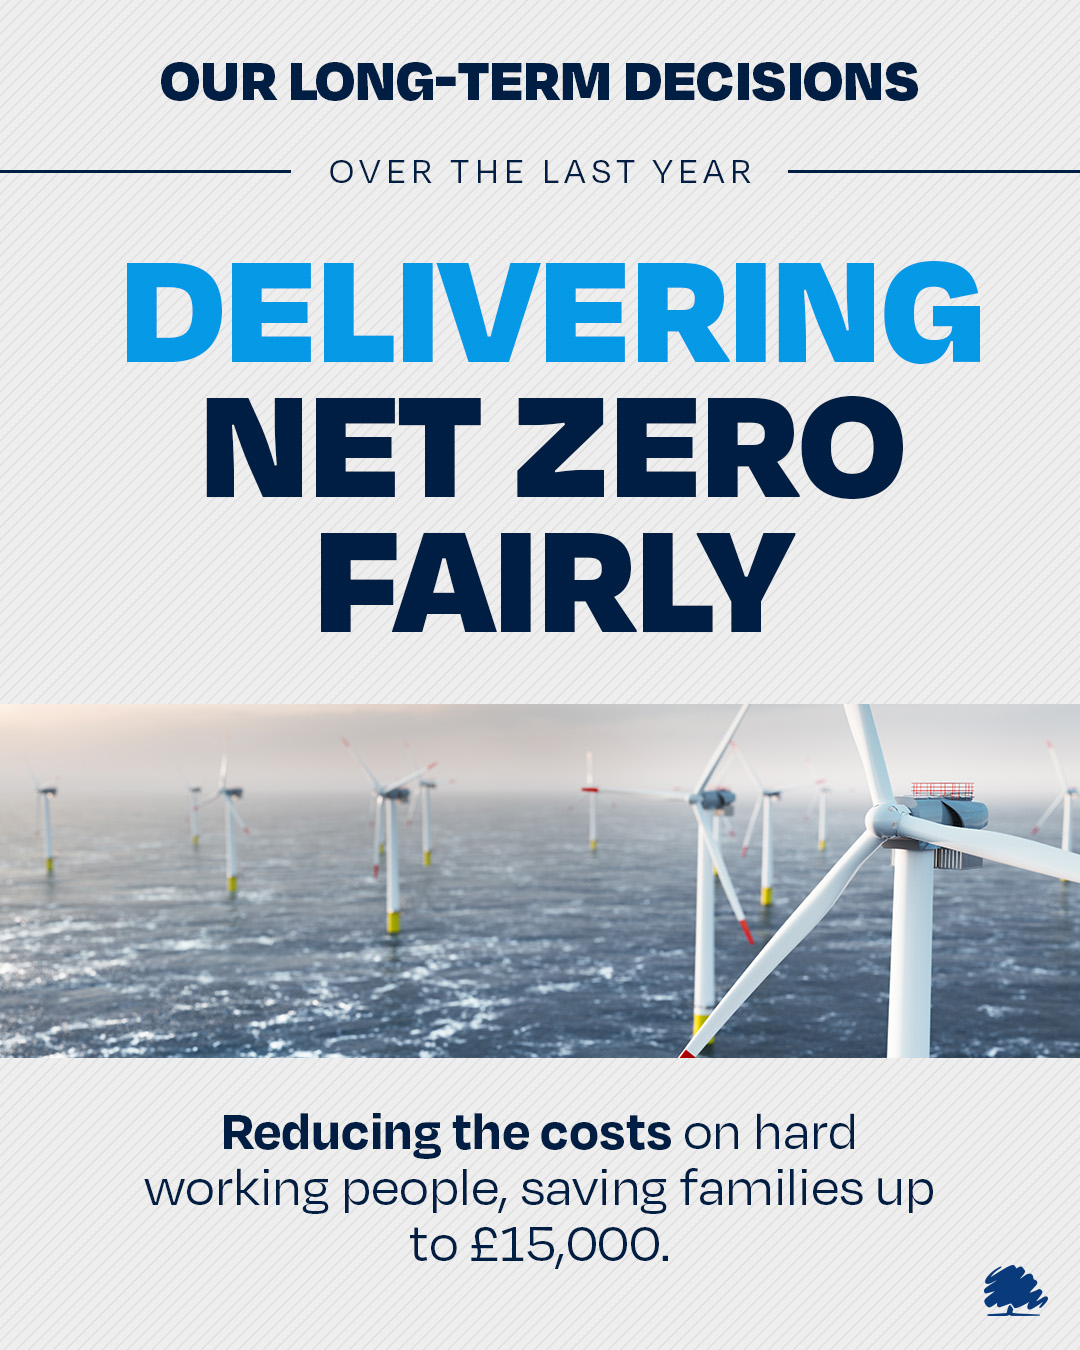 Delivering Net Zero fairly